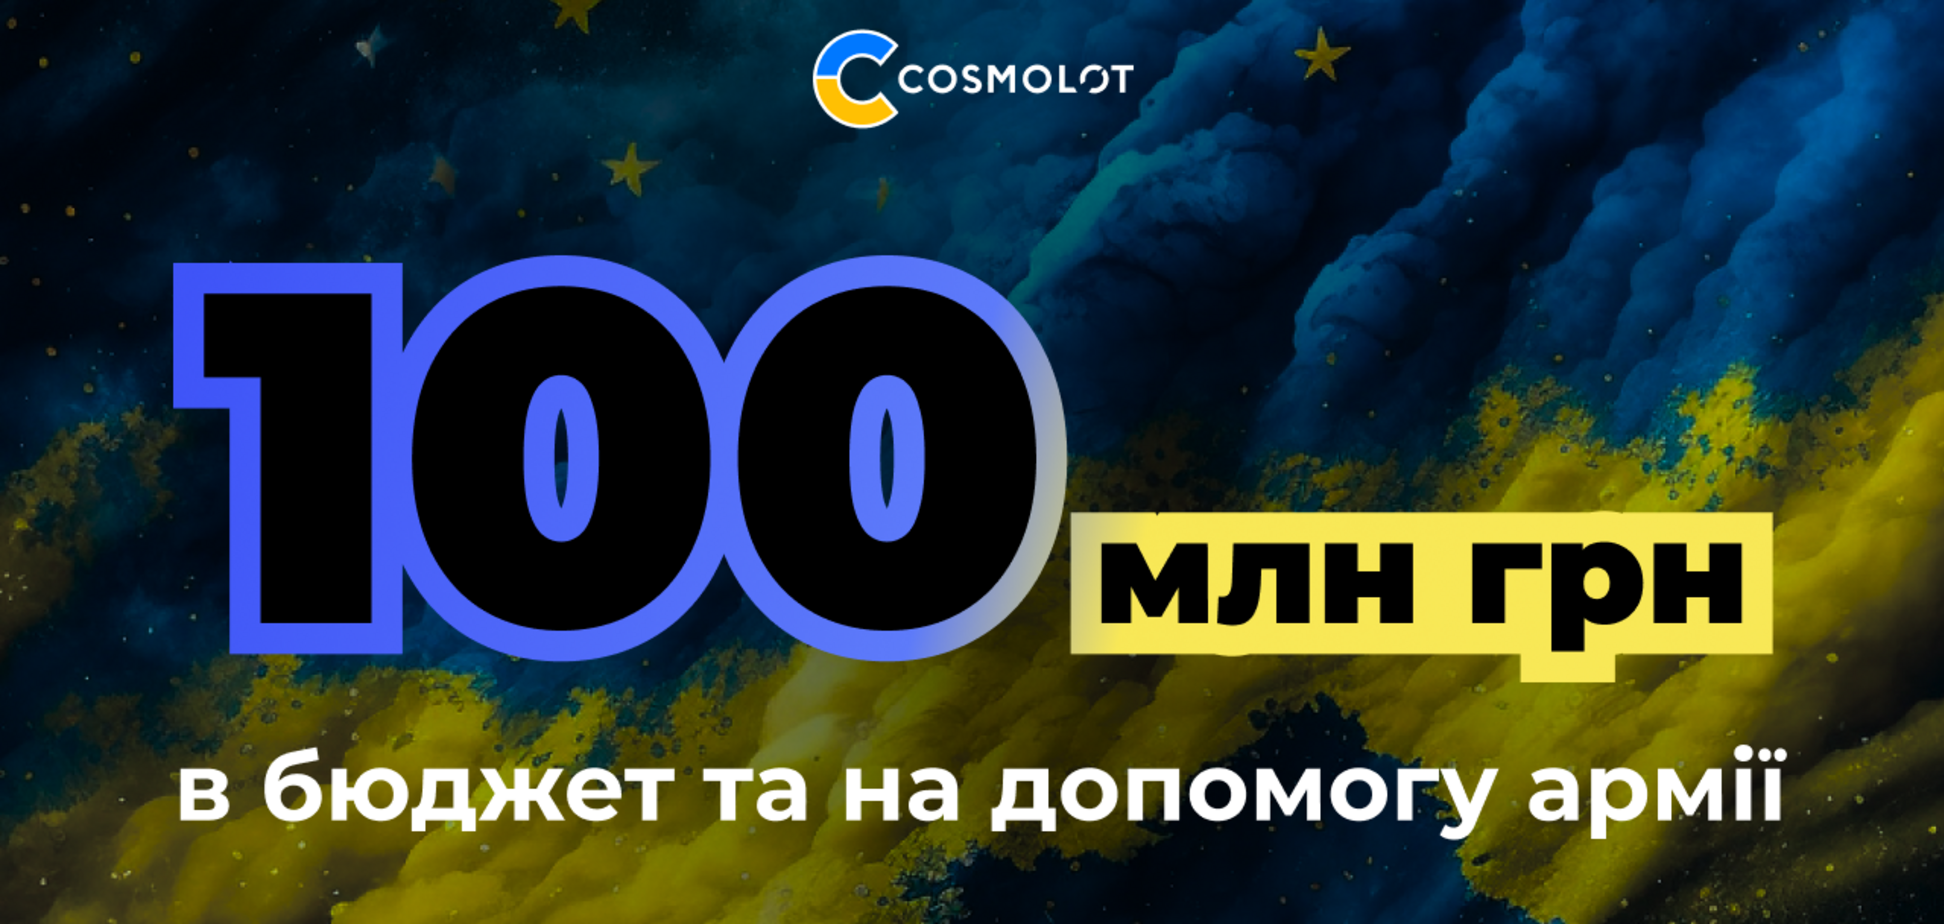 Cosmolot перечислил более 100 млн грн в бюджет и на помощь армии